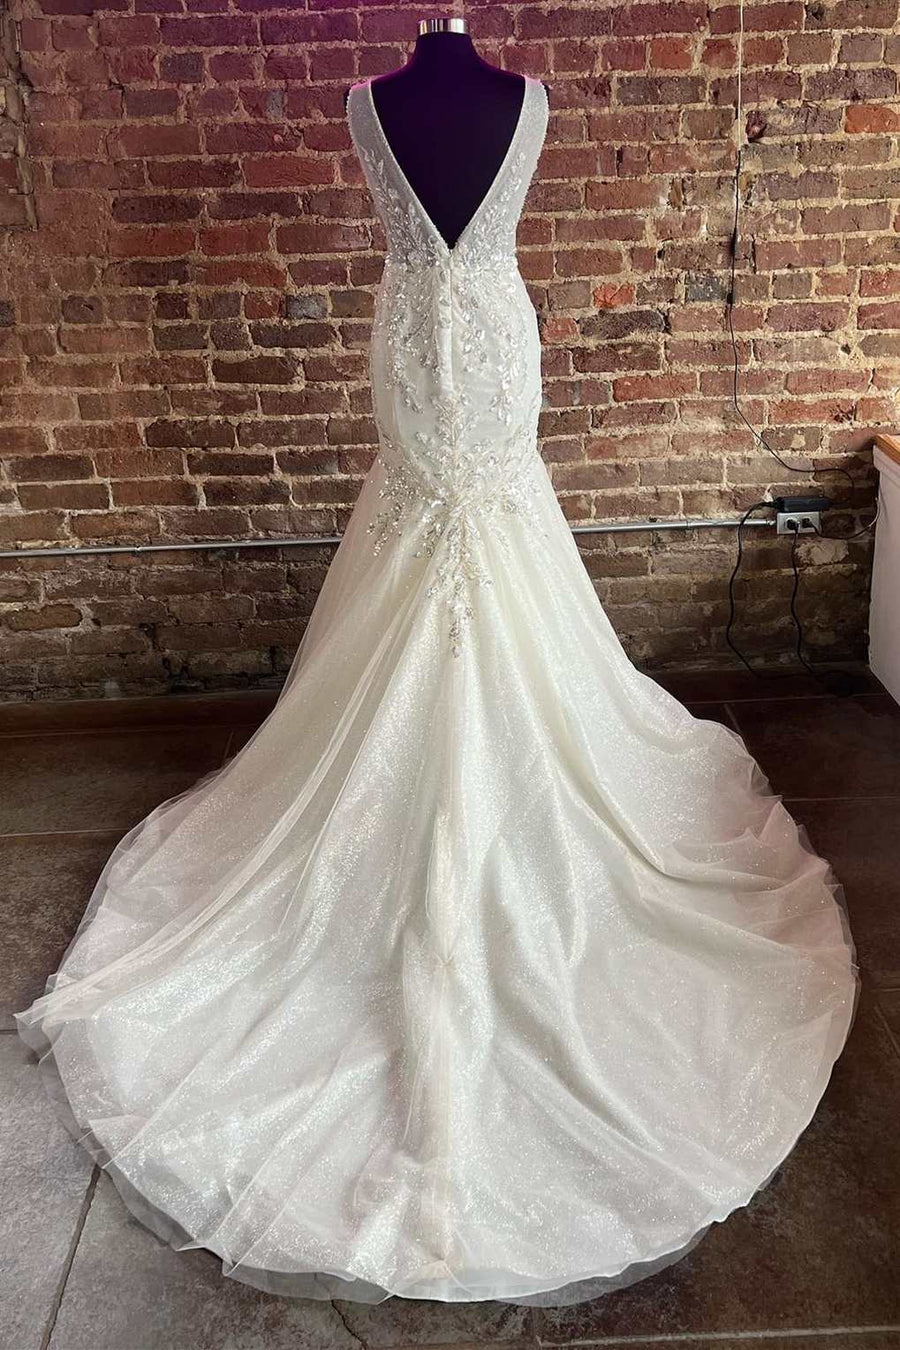 Mermaid White Tulle Lace Plunge V Long Wedding Dress